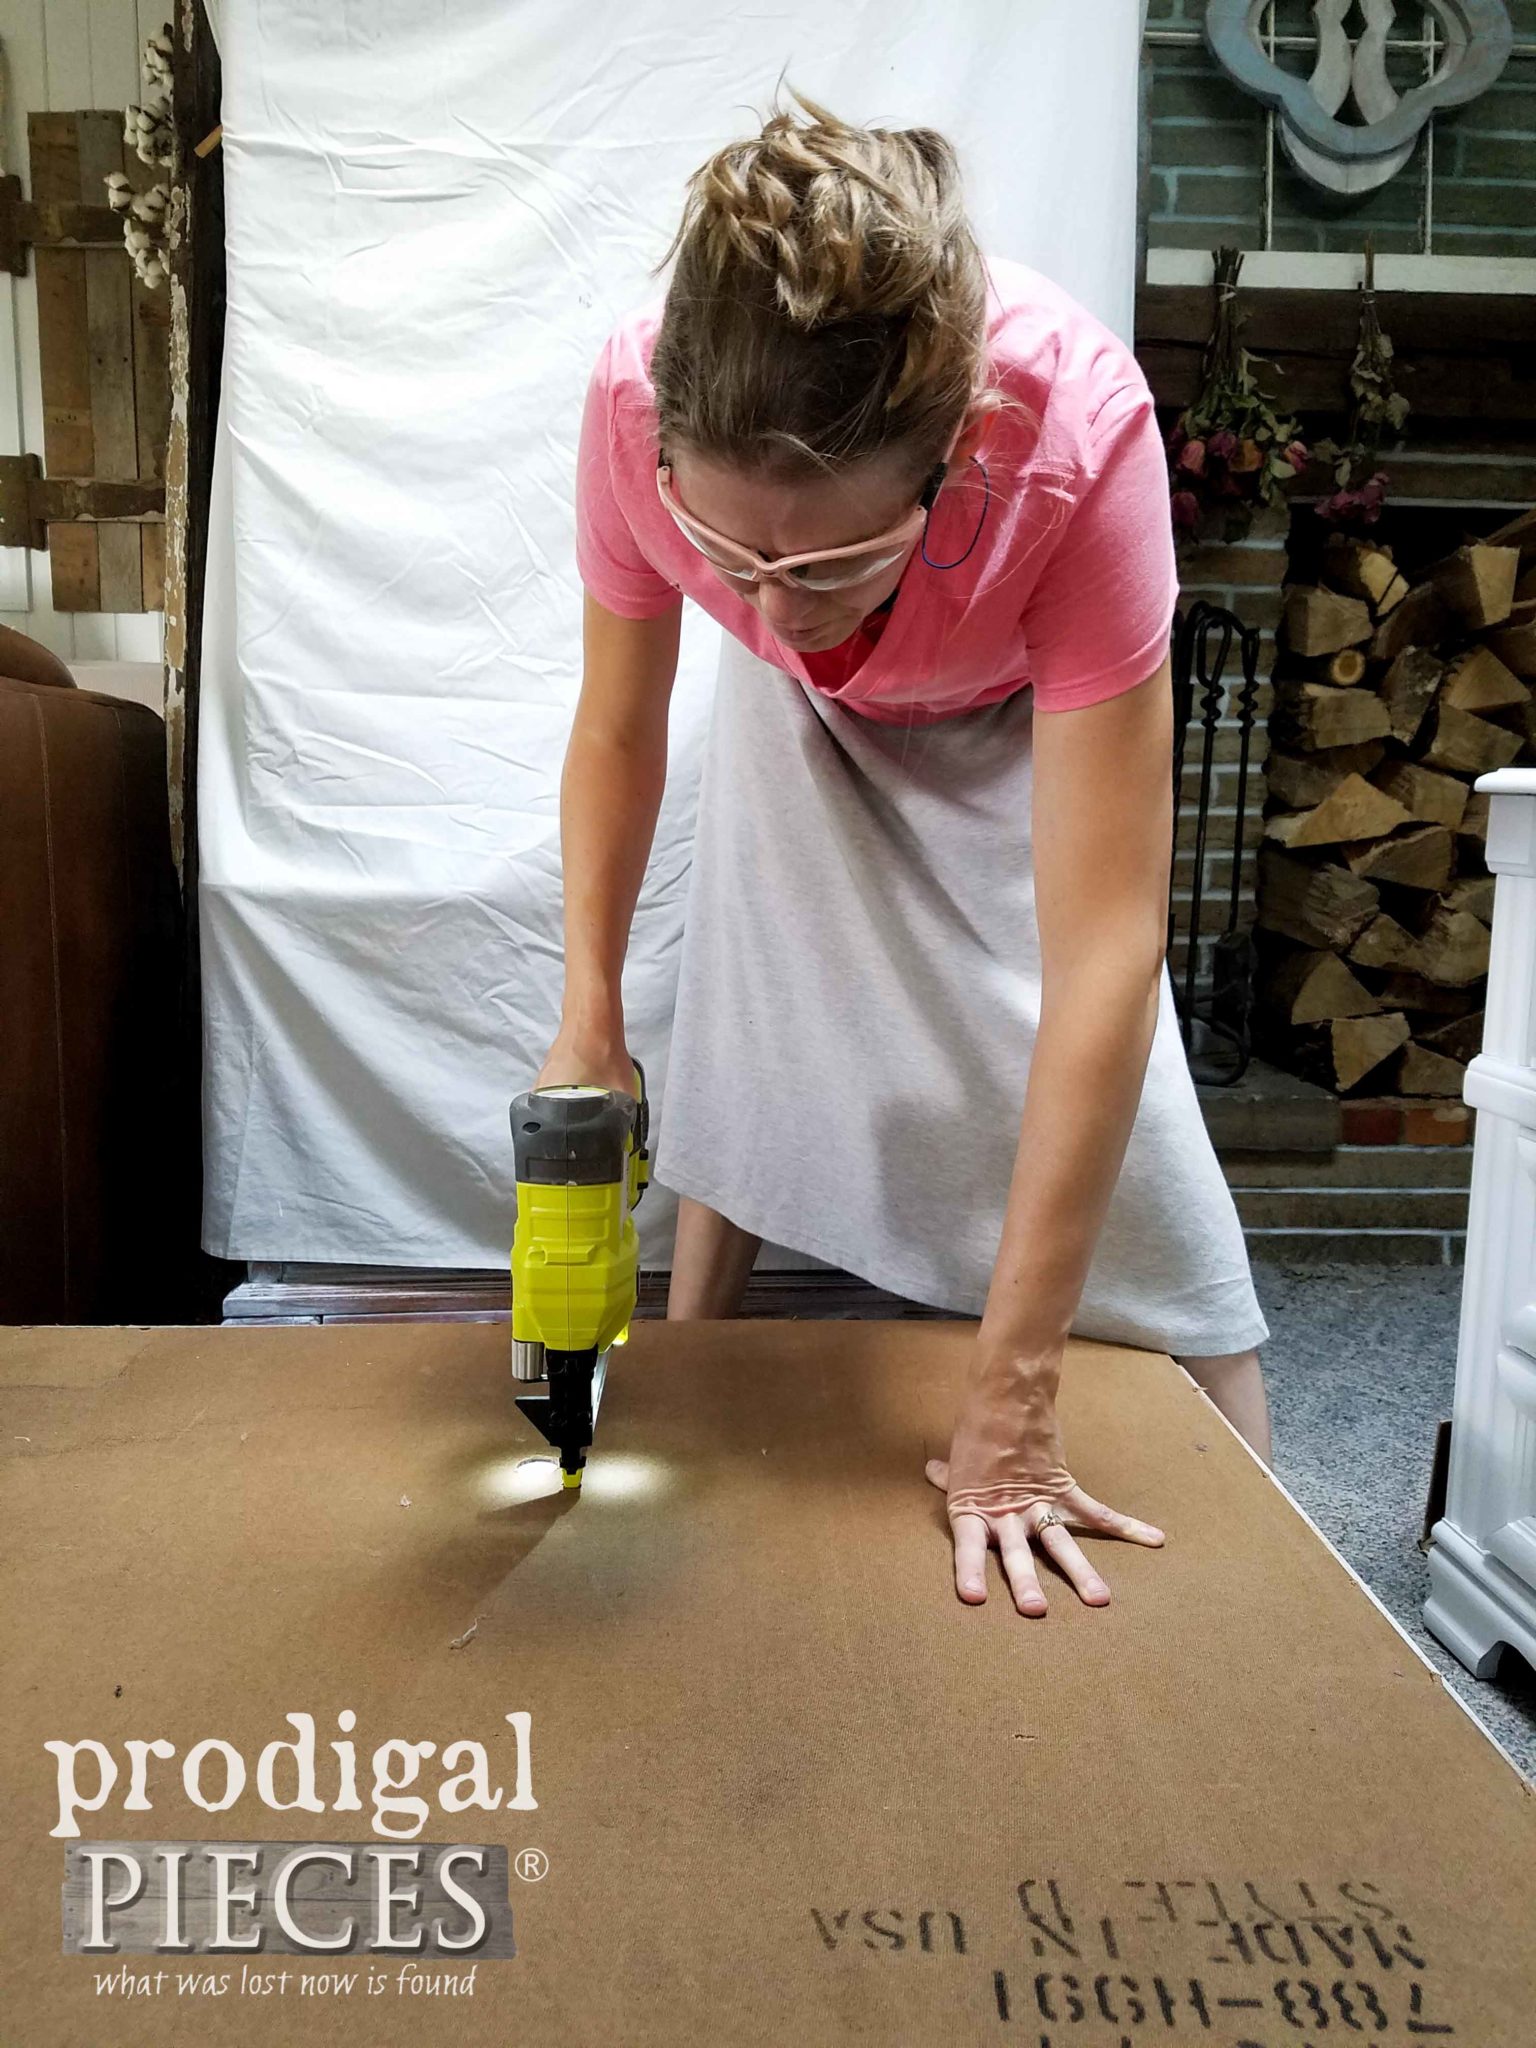 Stapling Desk Backing with Ryobi AirStrike Stapler by Prodigal Pieces | prodigalpieces.com